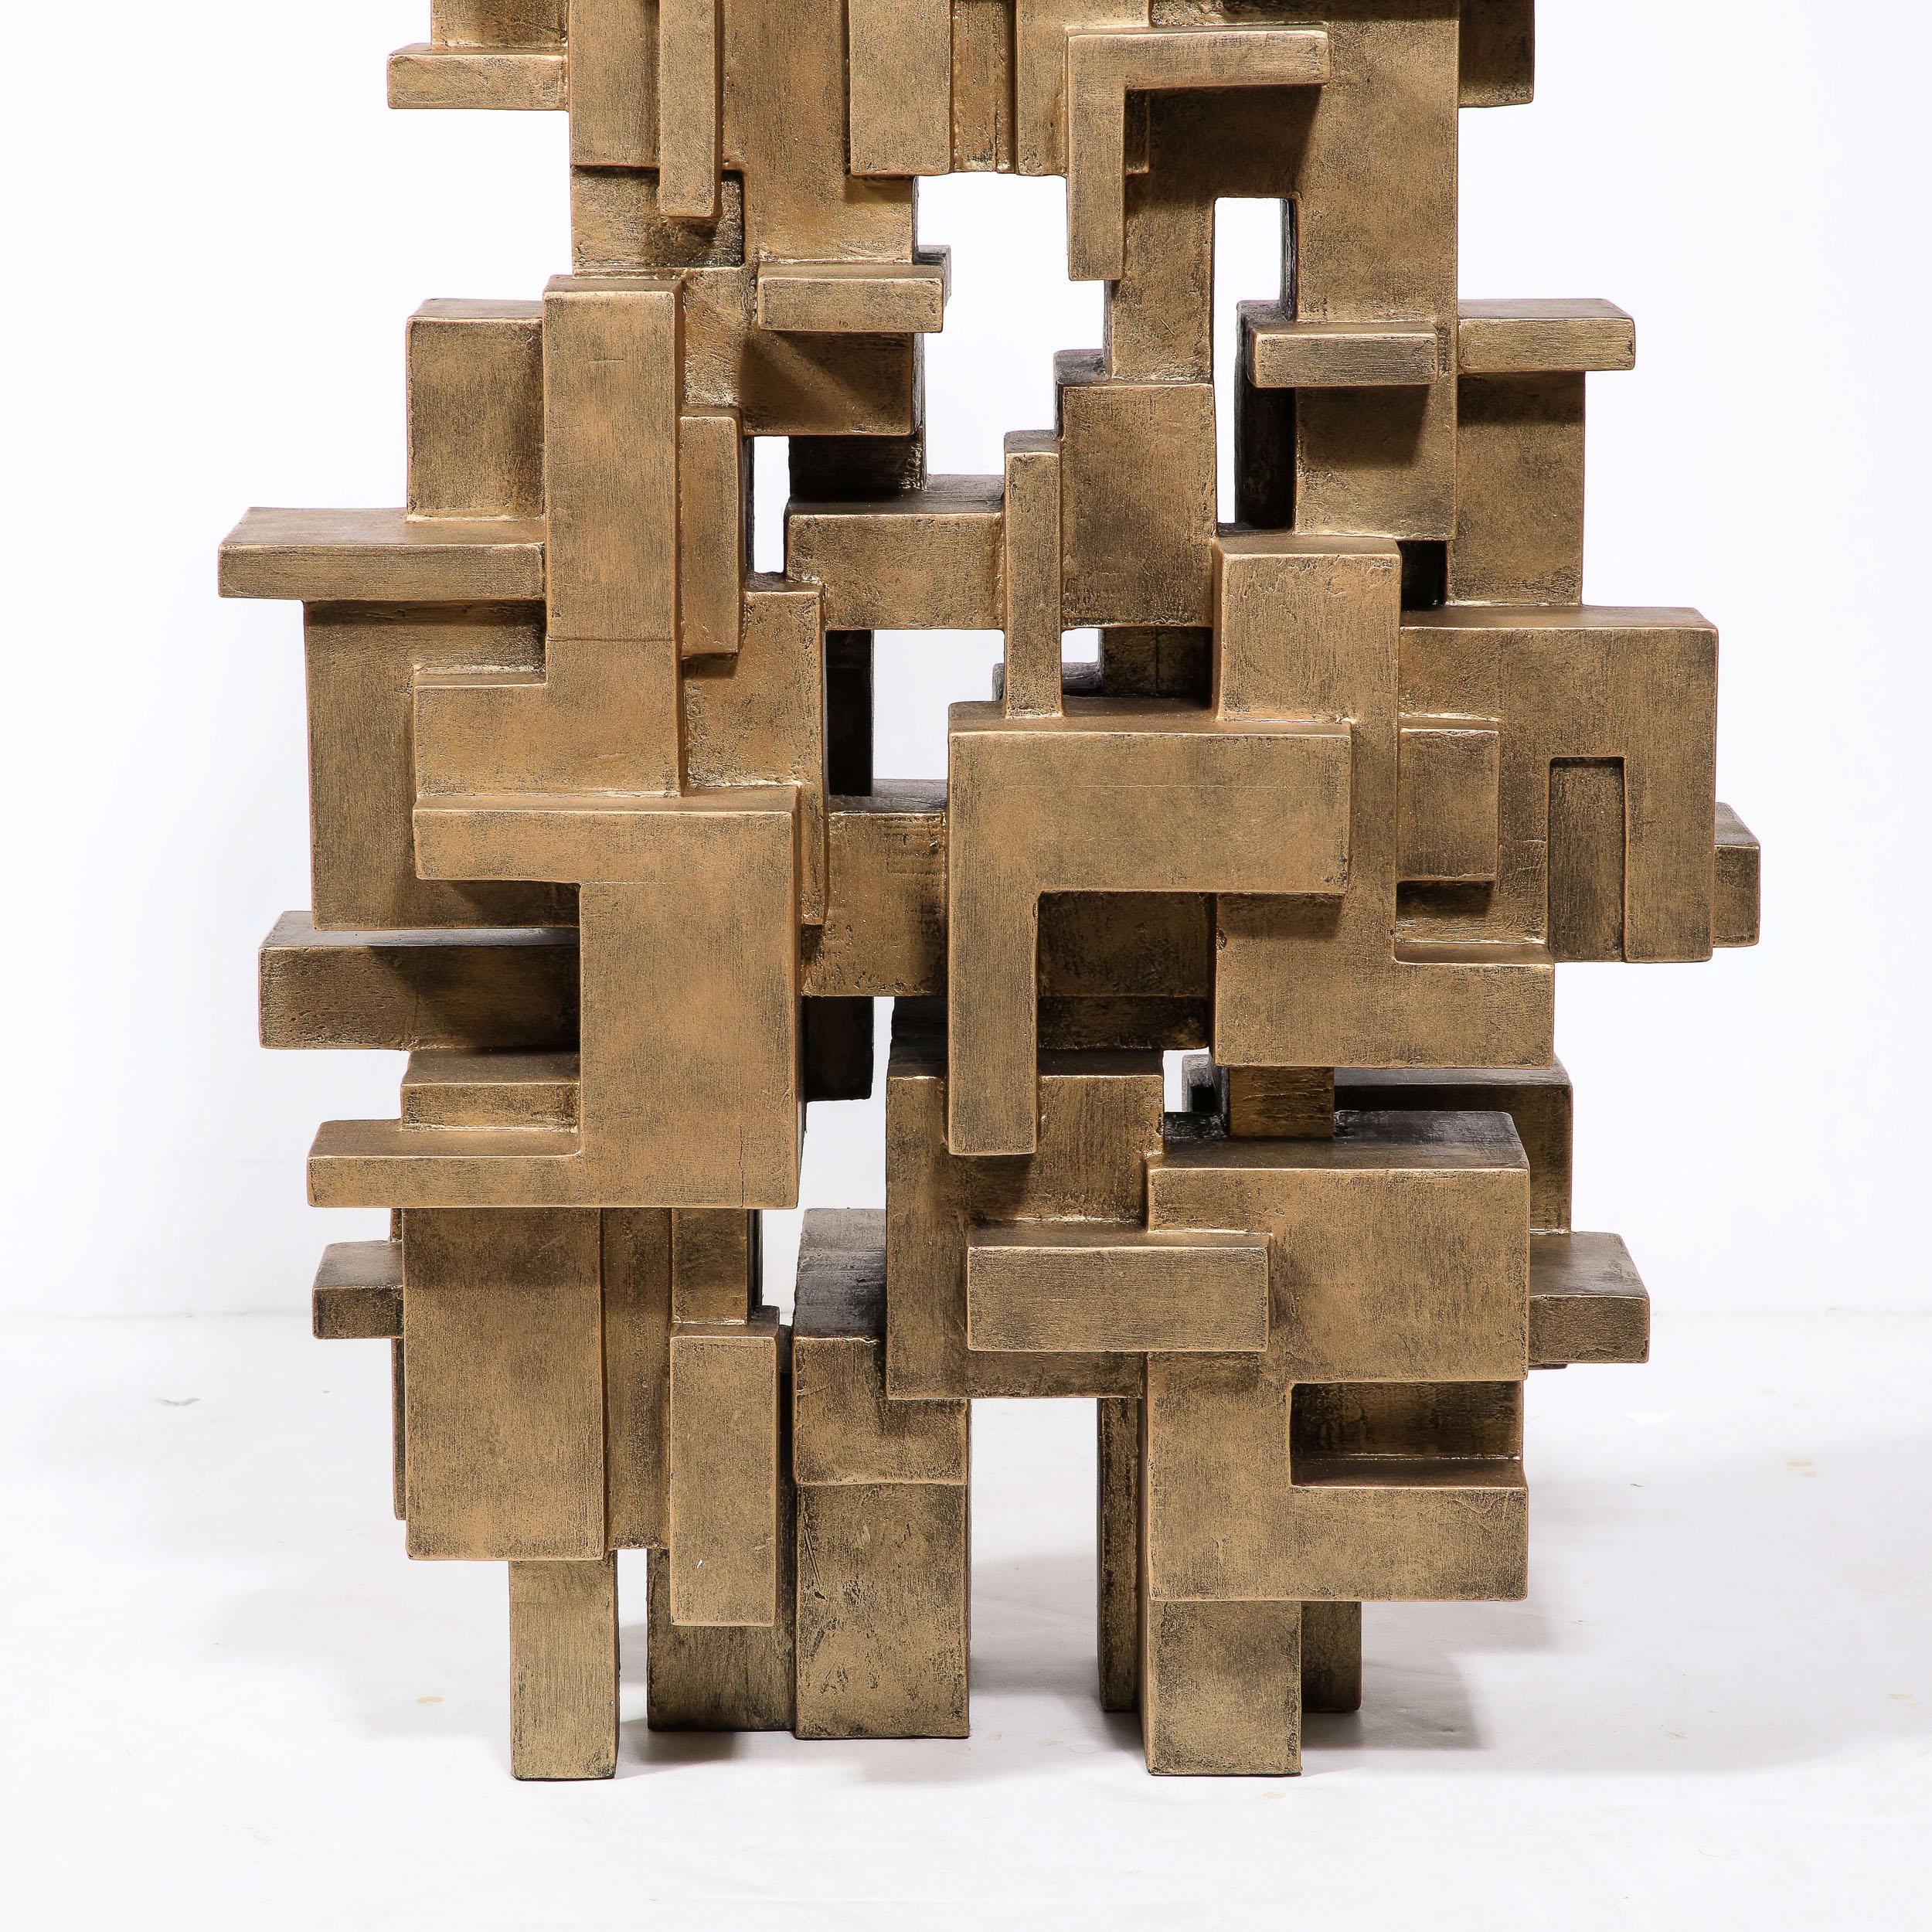 Diese schöne und dynamische isometrische Rasterskulptur wurde von dem geschätzten amerikanischen Künstler Dan Schneiger um 2010 in den Vereinigten Staaten realisiert. Im Dialog mit den Werken der großen Meister des 20. Jahrhunderts, Louise Nevelson